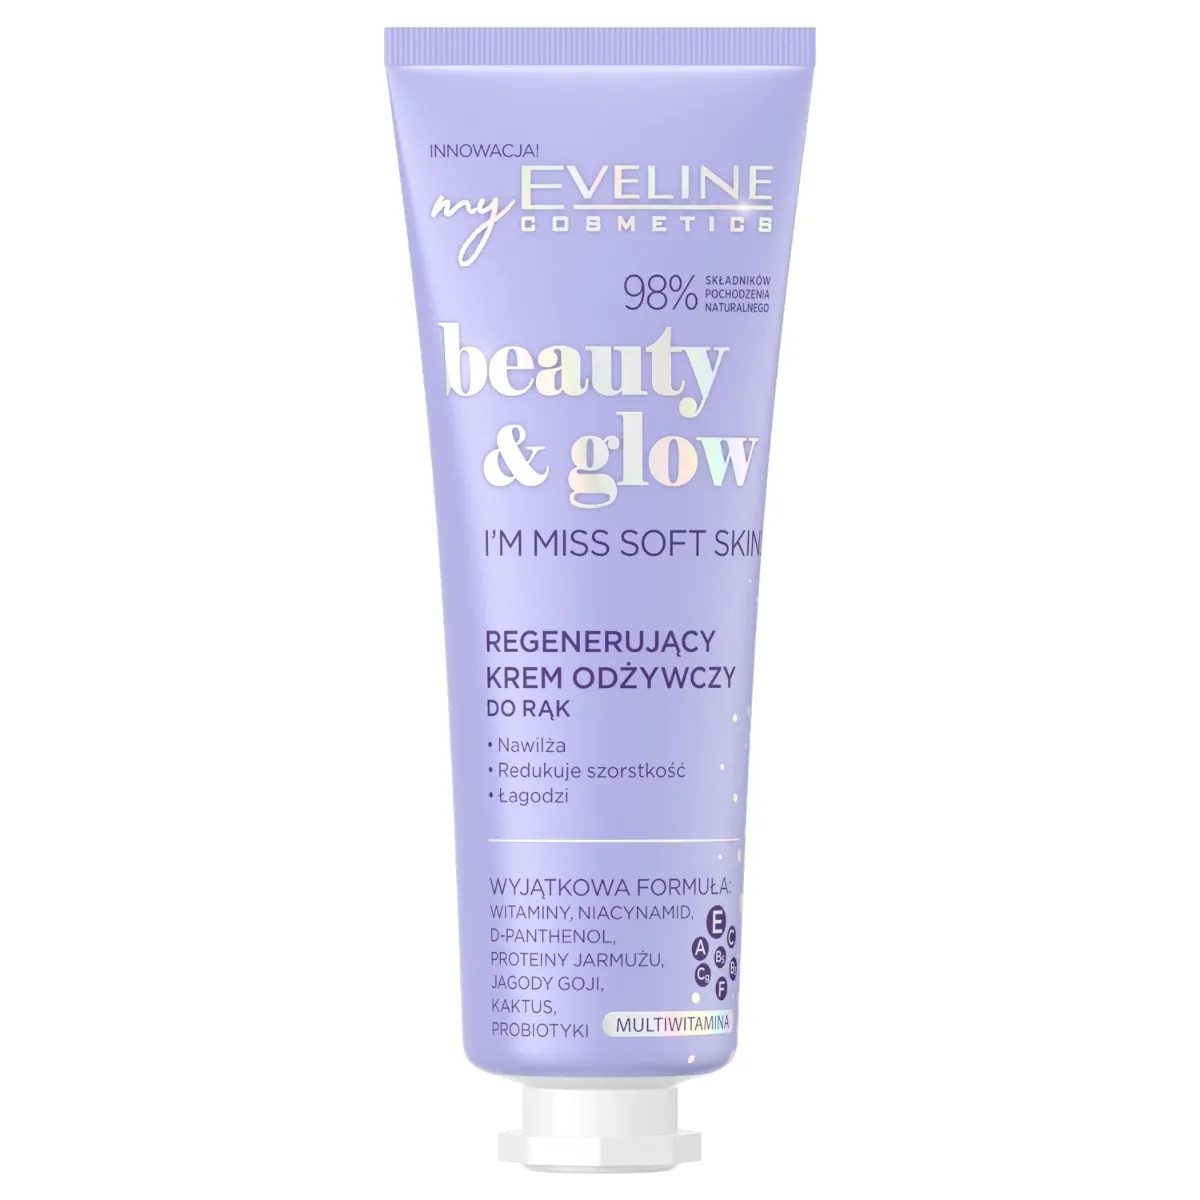 Eveline Cosmetics Beauty & Glow regenerujący krem do rąk odżywczy, 50 ml